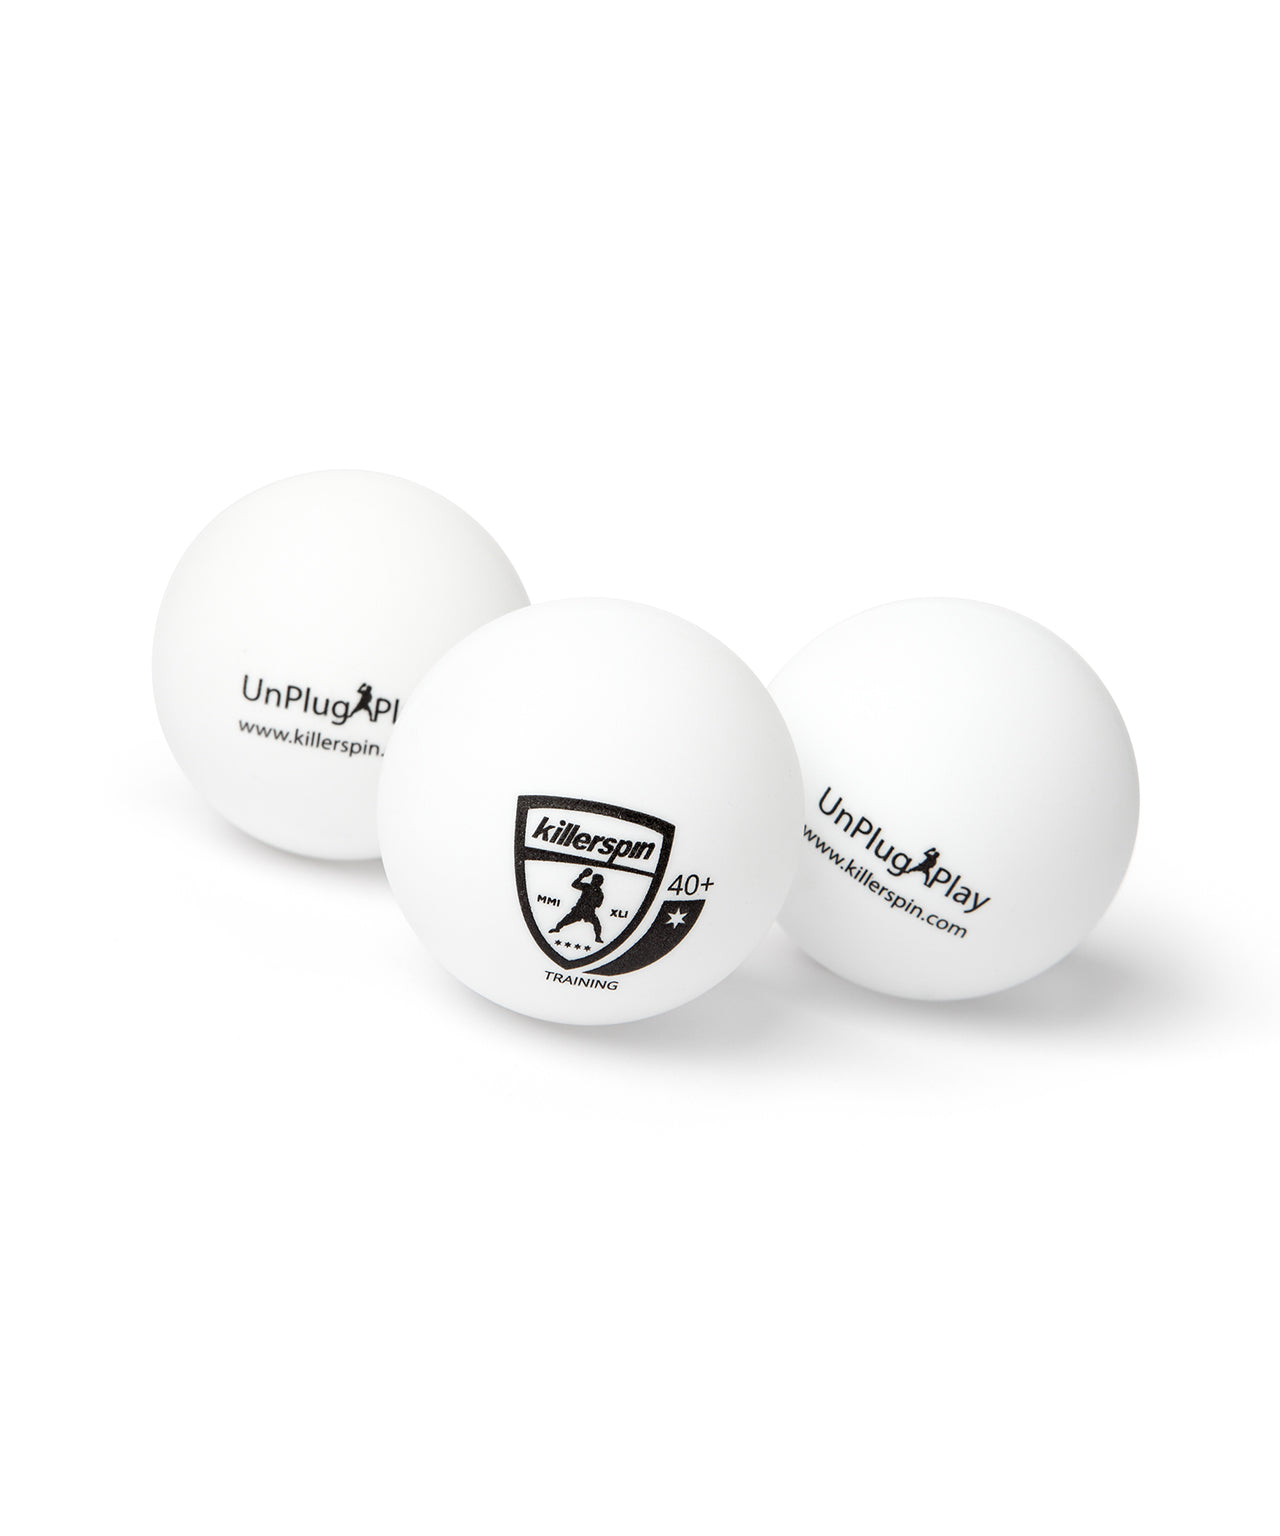 Ping Pong Balls - White